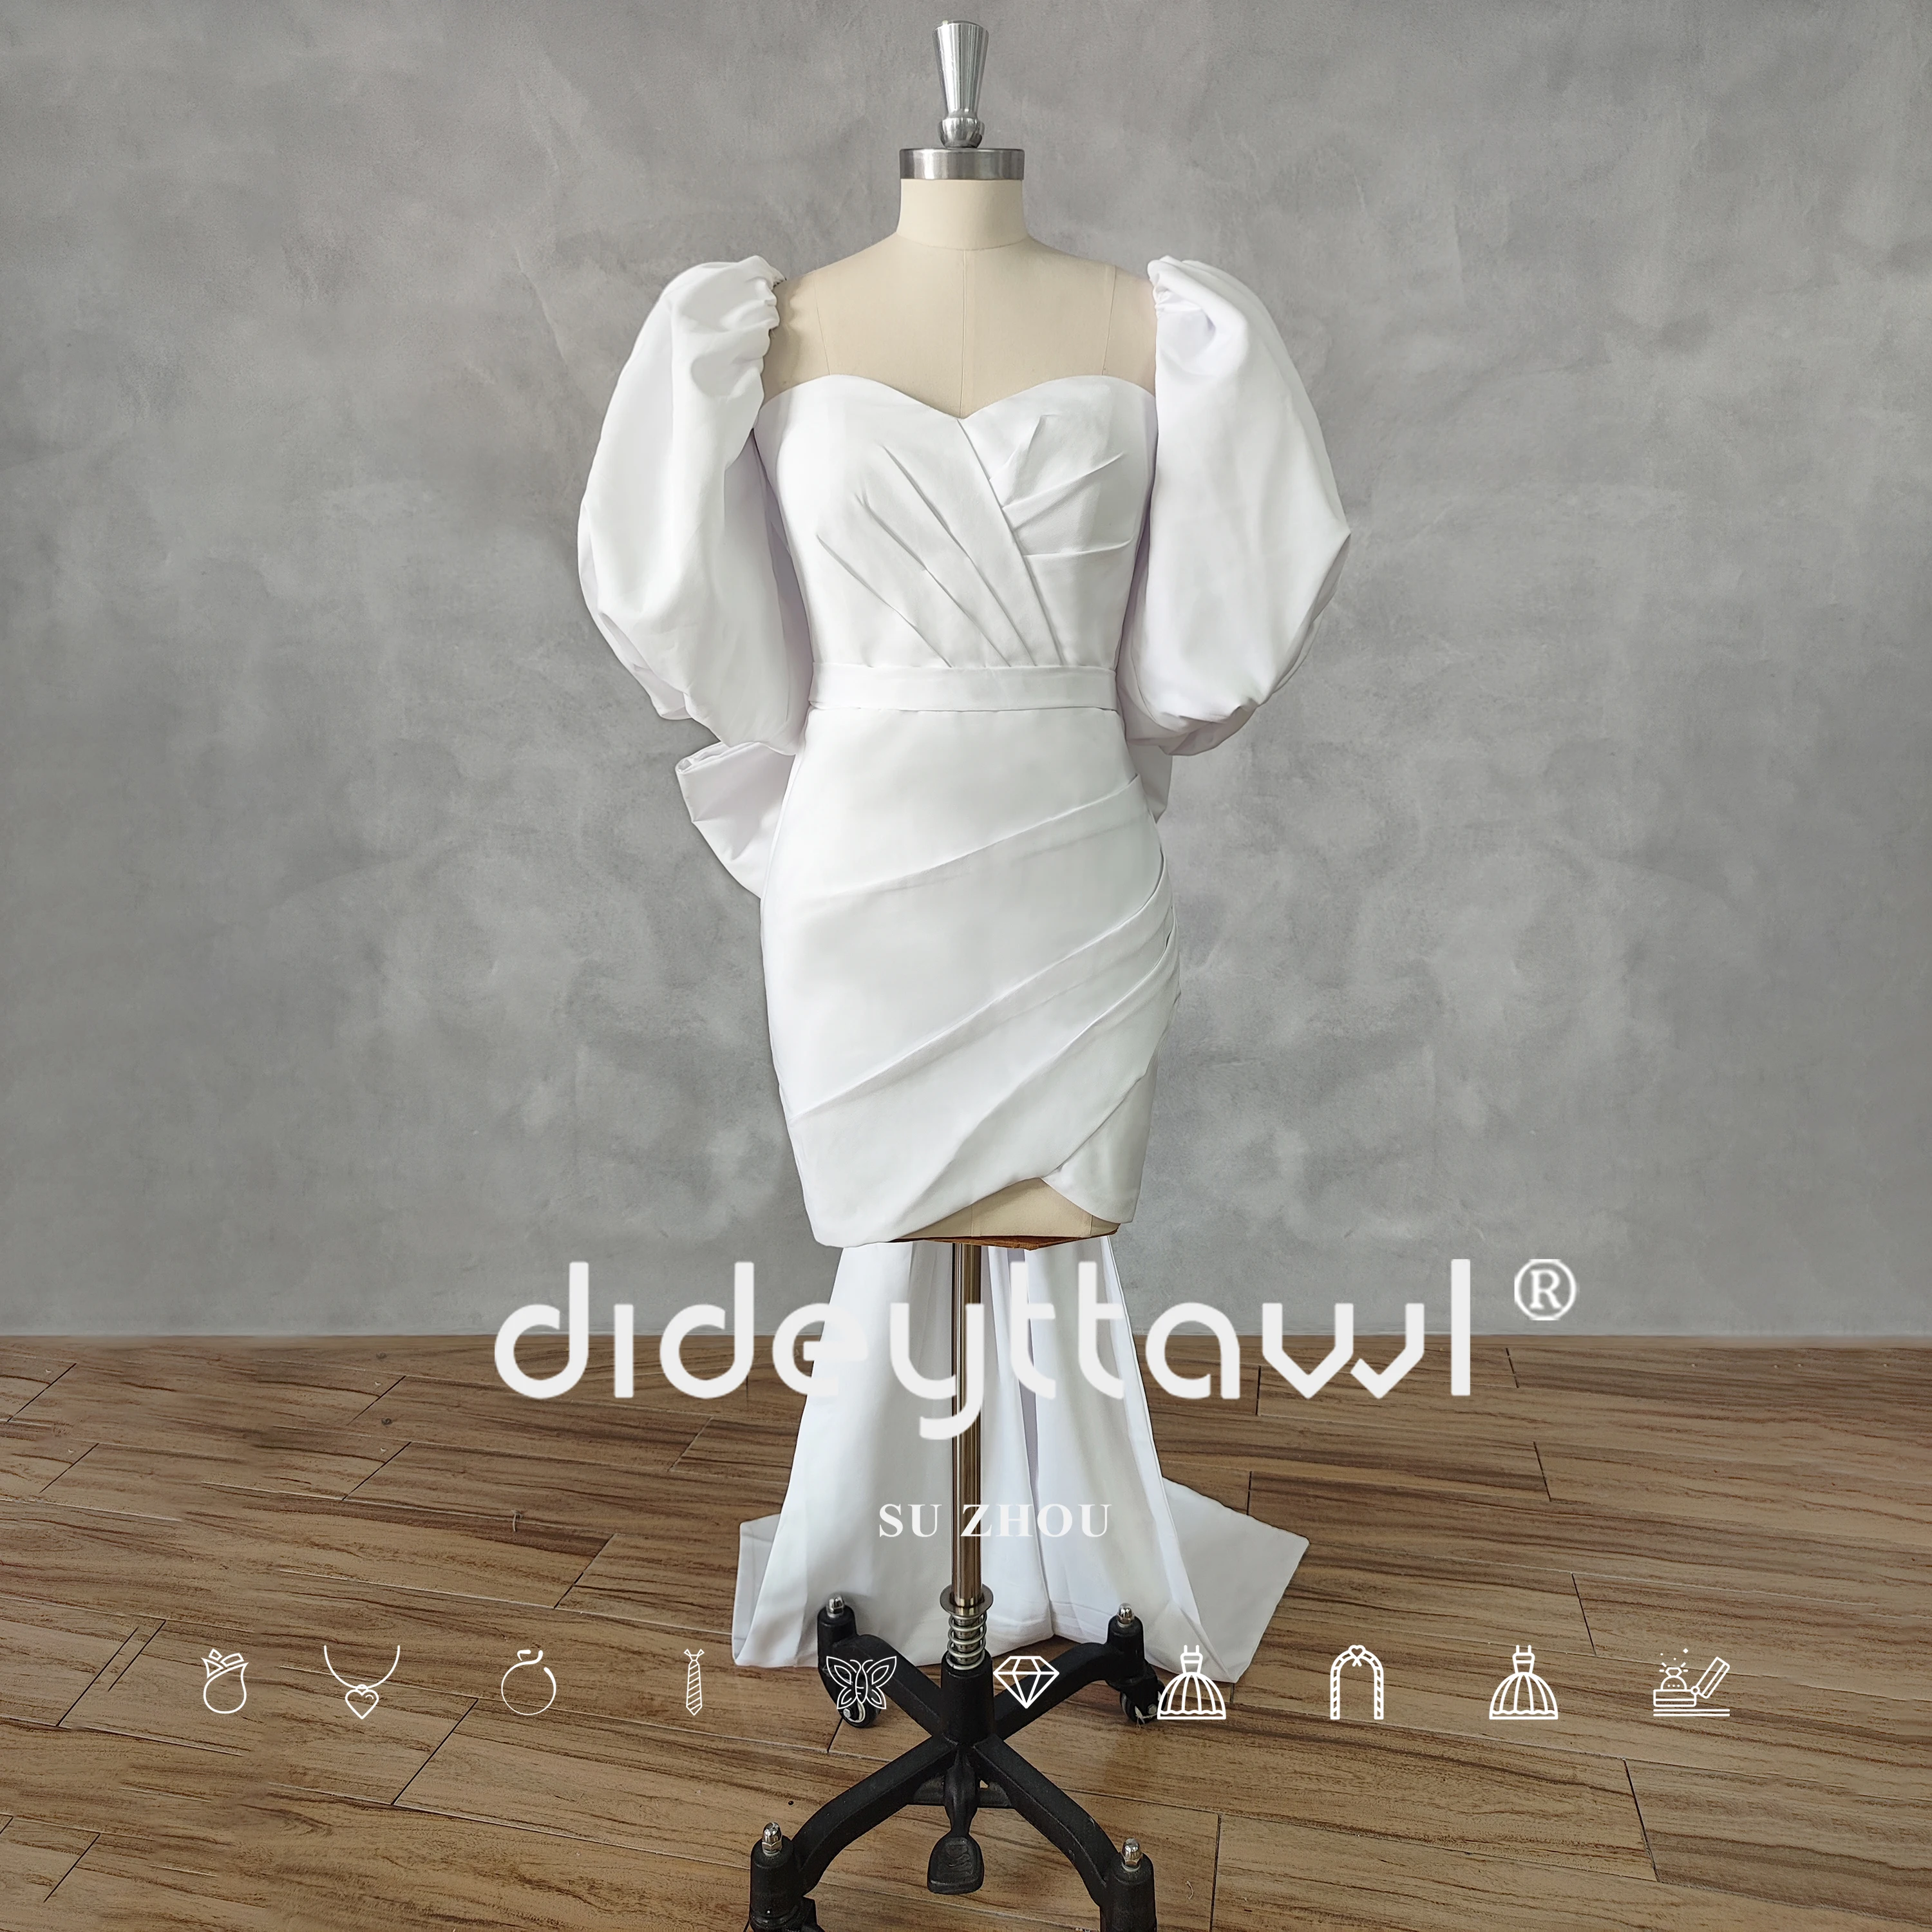 DIDEYTTAWL Imagem Real Querida Mangas Puff Pregas Vestido de Noiva Curto Arco Bainha Acima do Joelho Mini Vestido de Noiva Feito